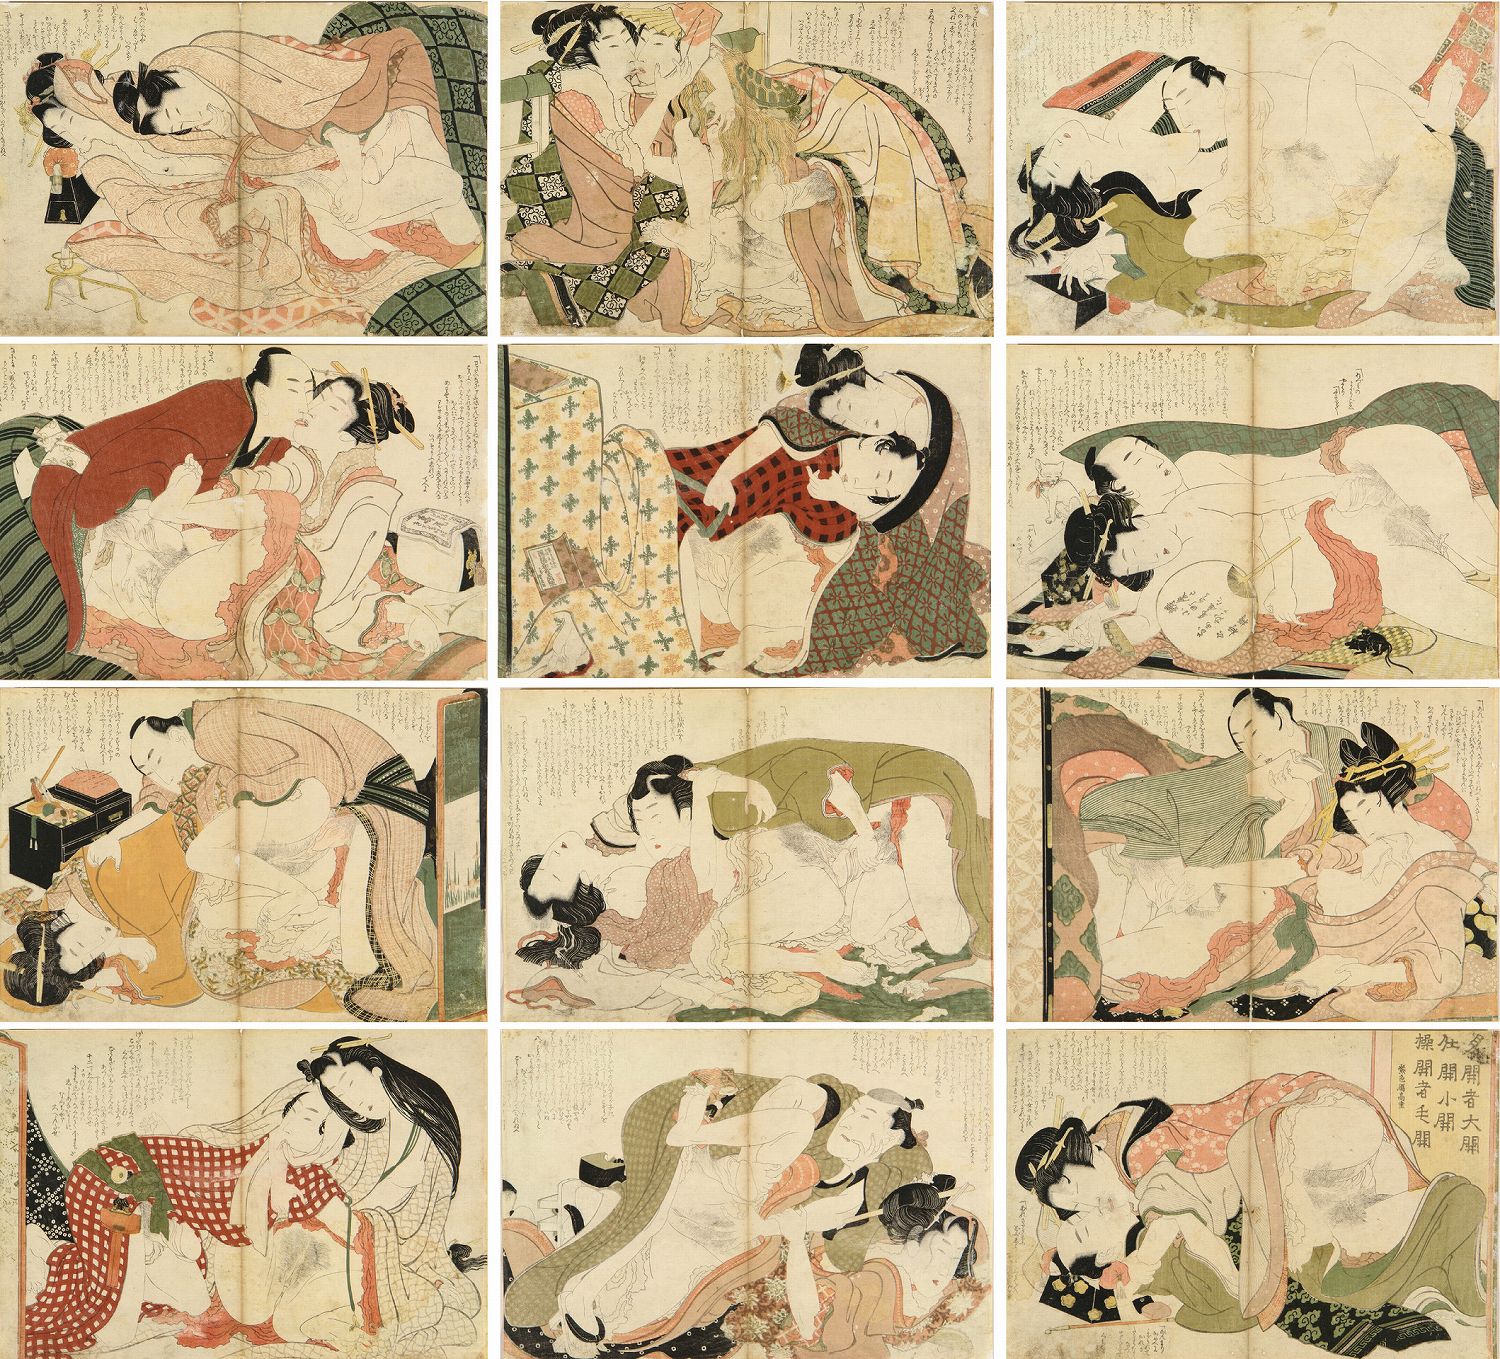 Erotic hokusai Hokusai: erotic